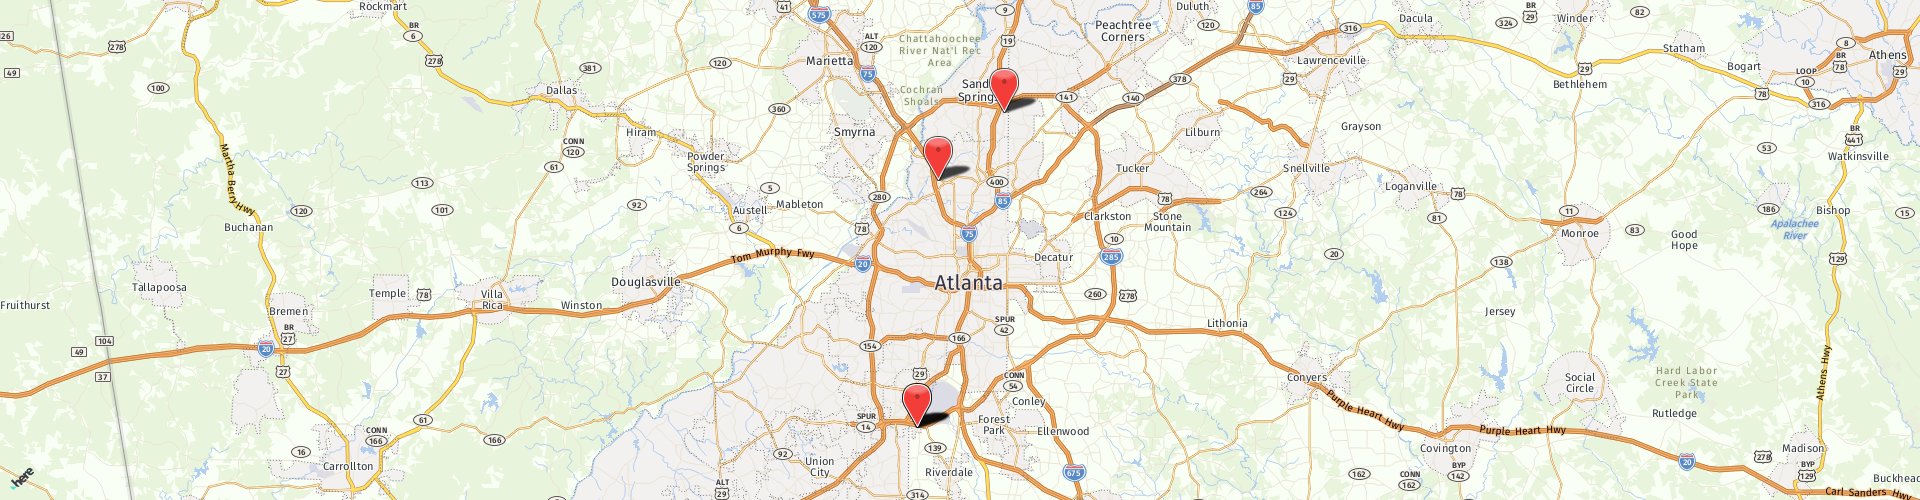 Location Map: